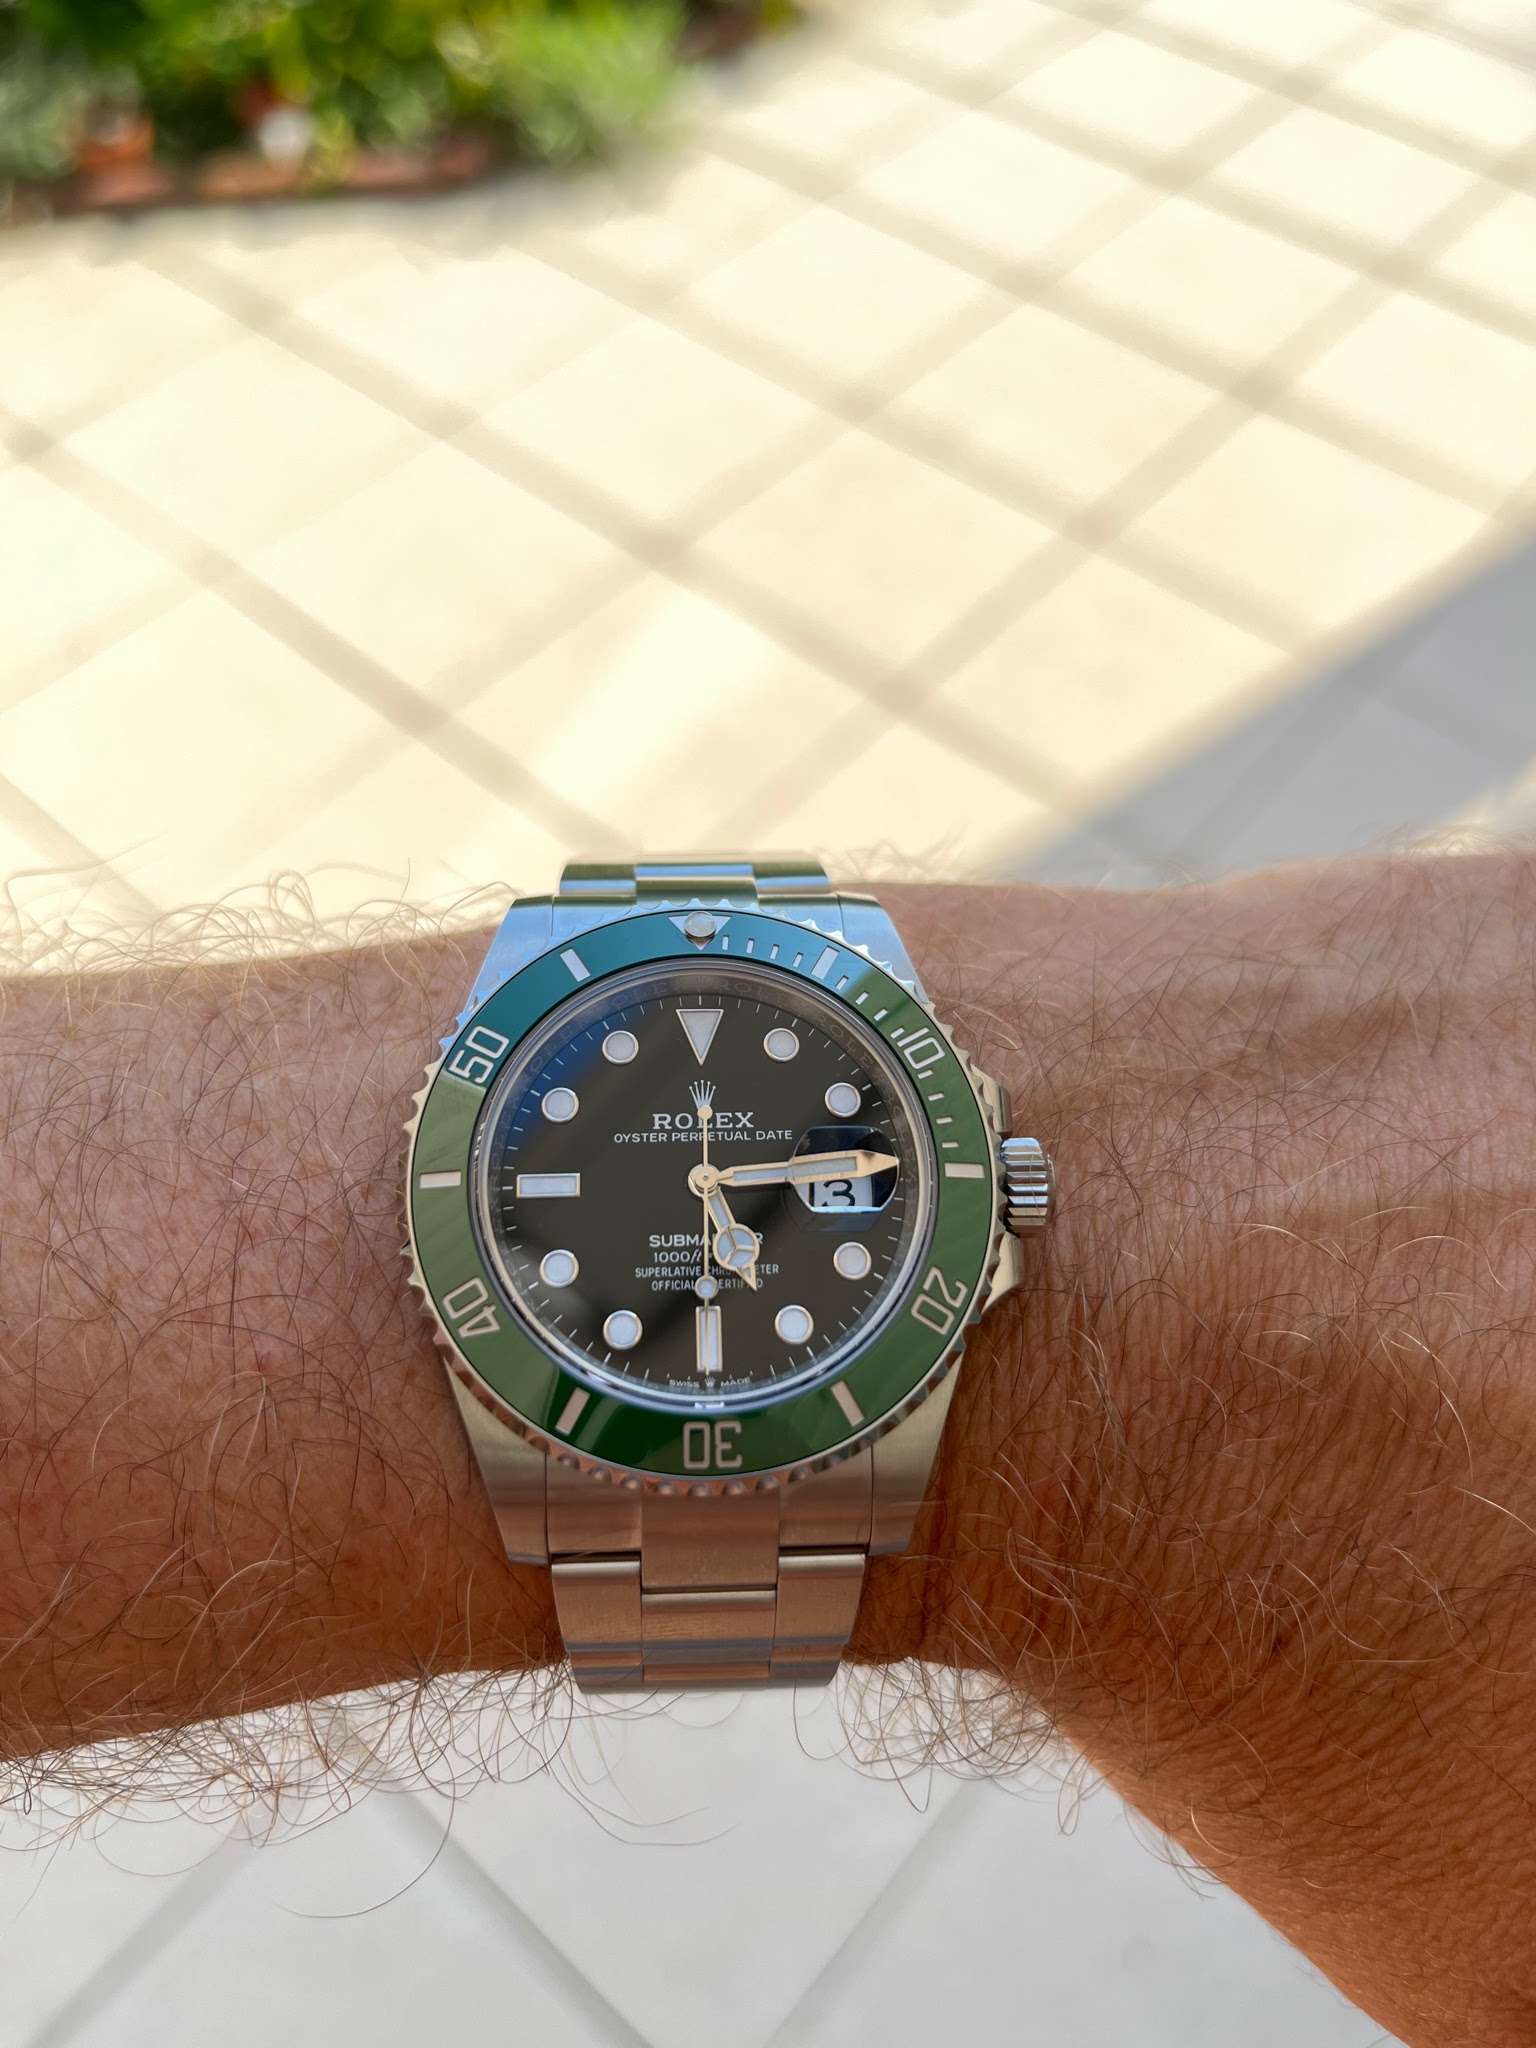 Rolex - Submariner LV new bezel color arrived